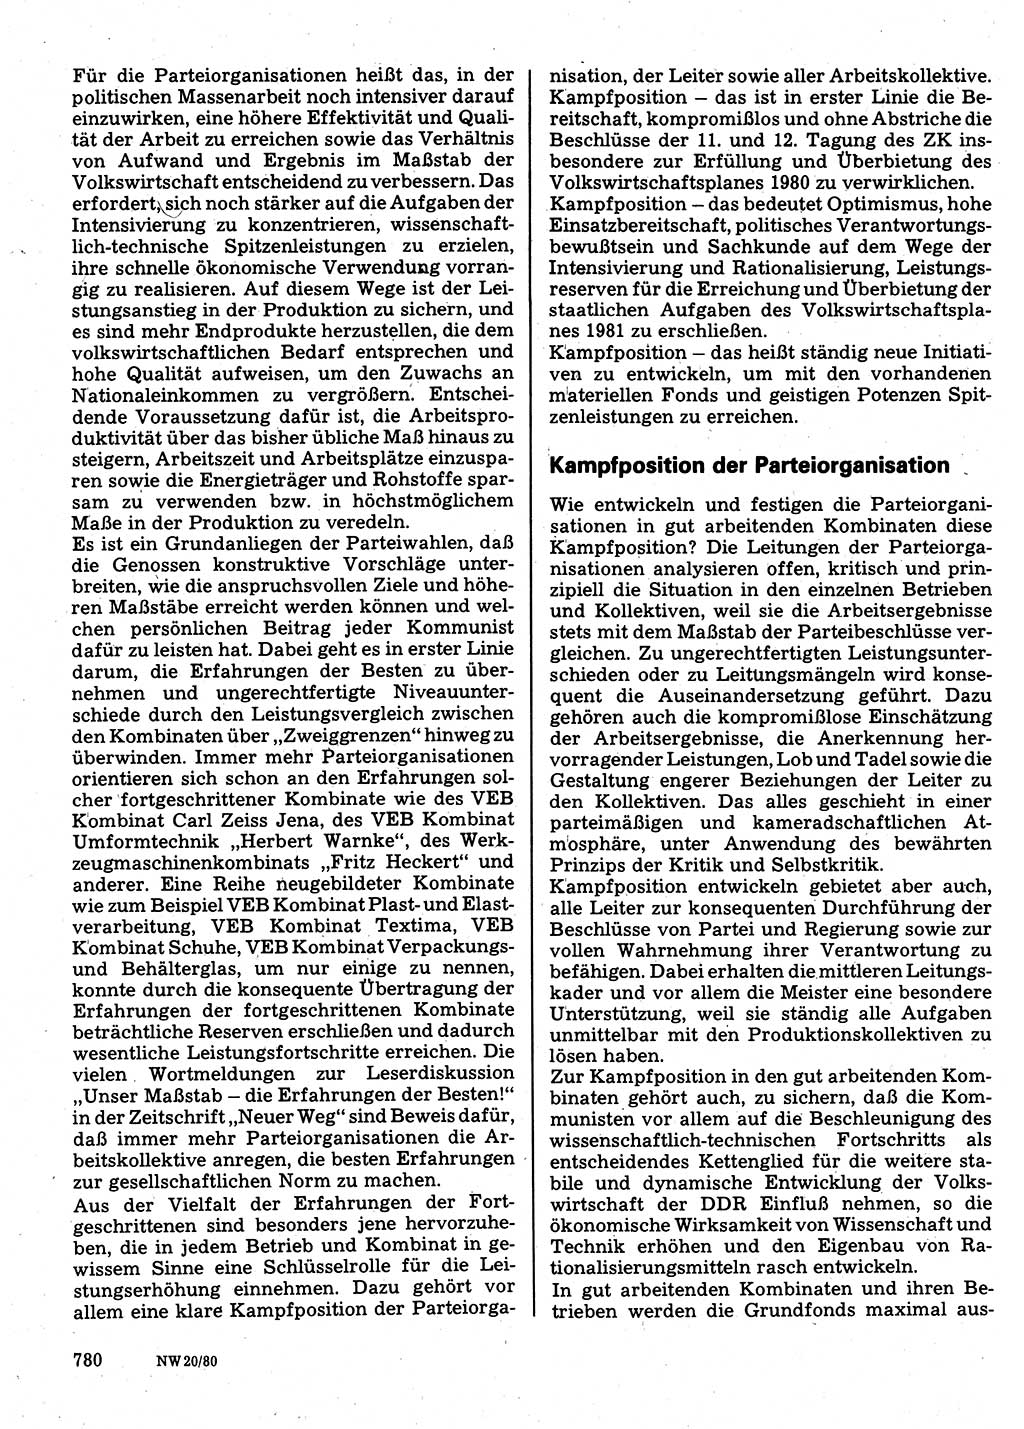 Neuer Weg (NW), Organ des Zentralkomitees (ZK) der SED (Sozialistische Einheitspartei Deutschlands) für Fragen des Parteilebens, 35. Jahrgang [Deutsche Demokratische Republik (DDR)] 1980, Seite 780 (NW ZK SED DDR 1980, S. 780)